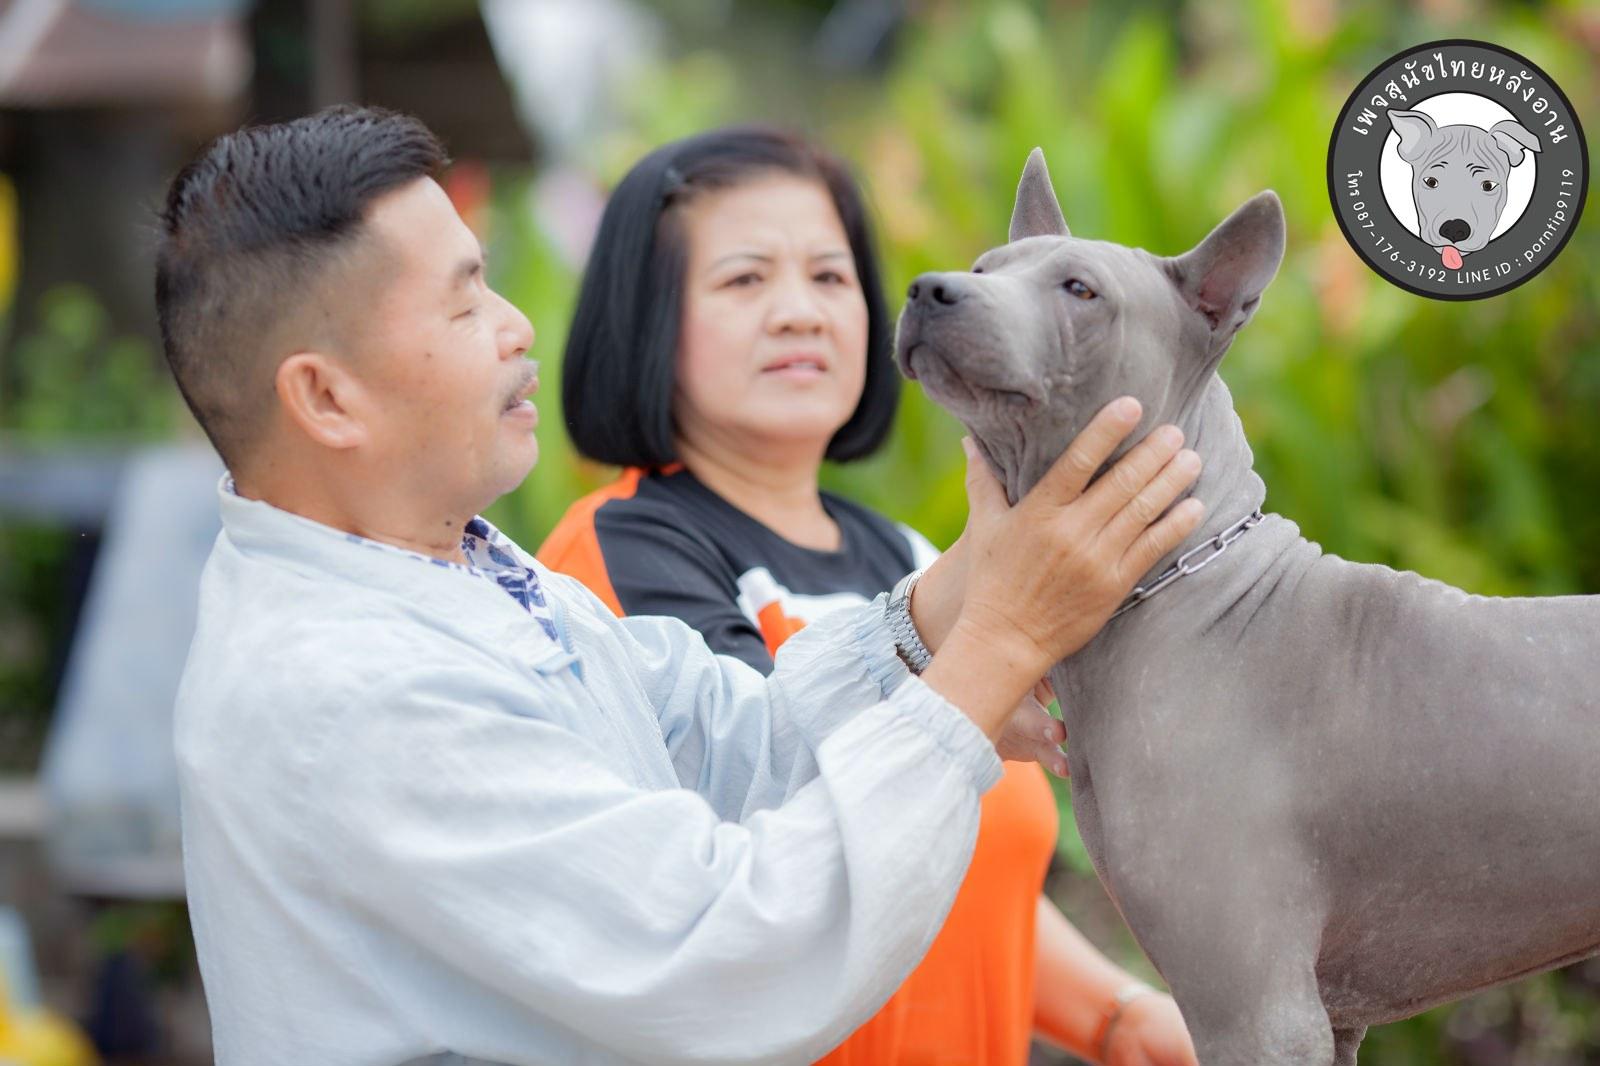 สุนัขไทยหลังอาน ขายสุนัขไทยหลังอาน   ลูกสุนัขไทยหลังอาน พ่อพันธุ์แม่พันธุ์Print-0333_webcamera360_20141224232641